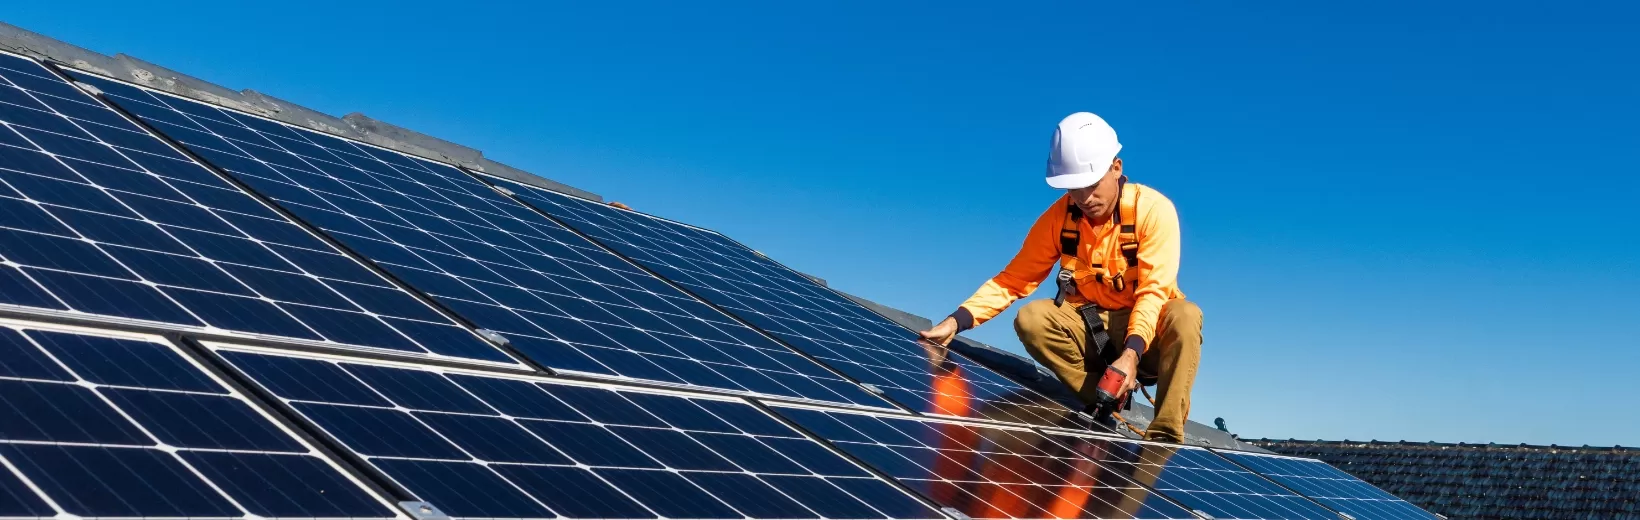 Rooftop solar worker